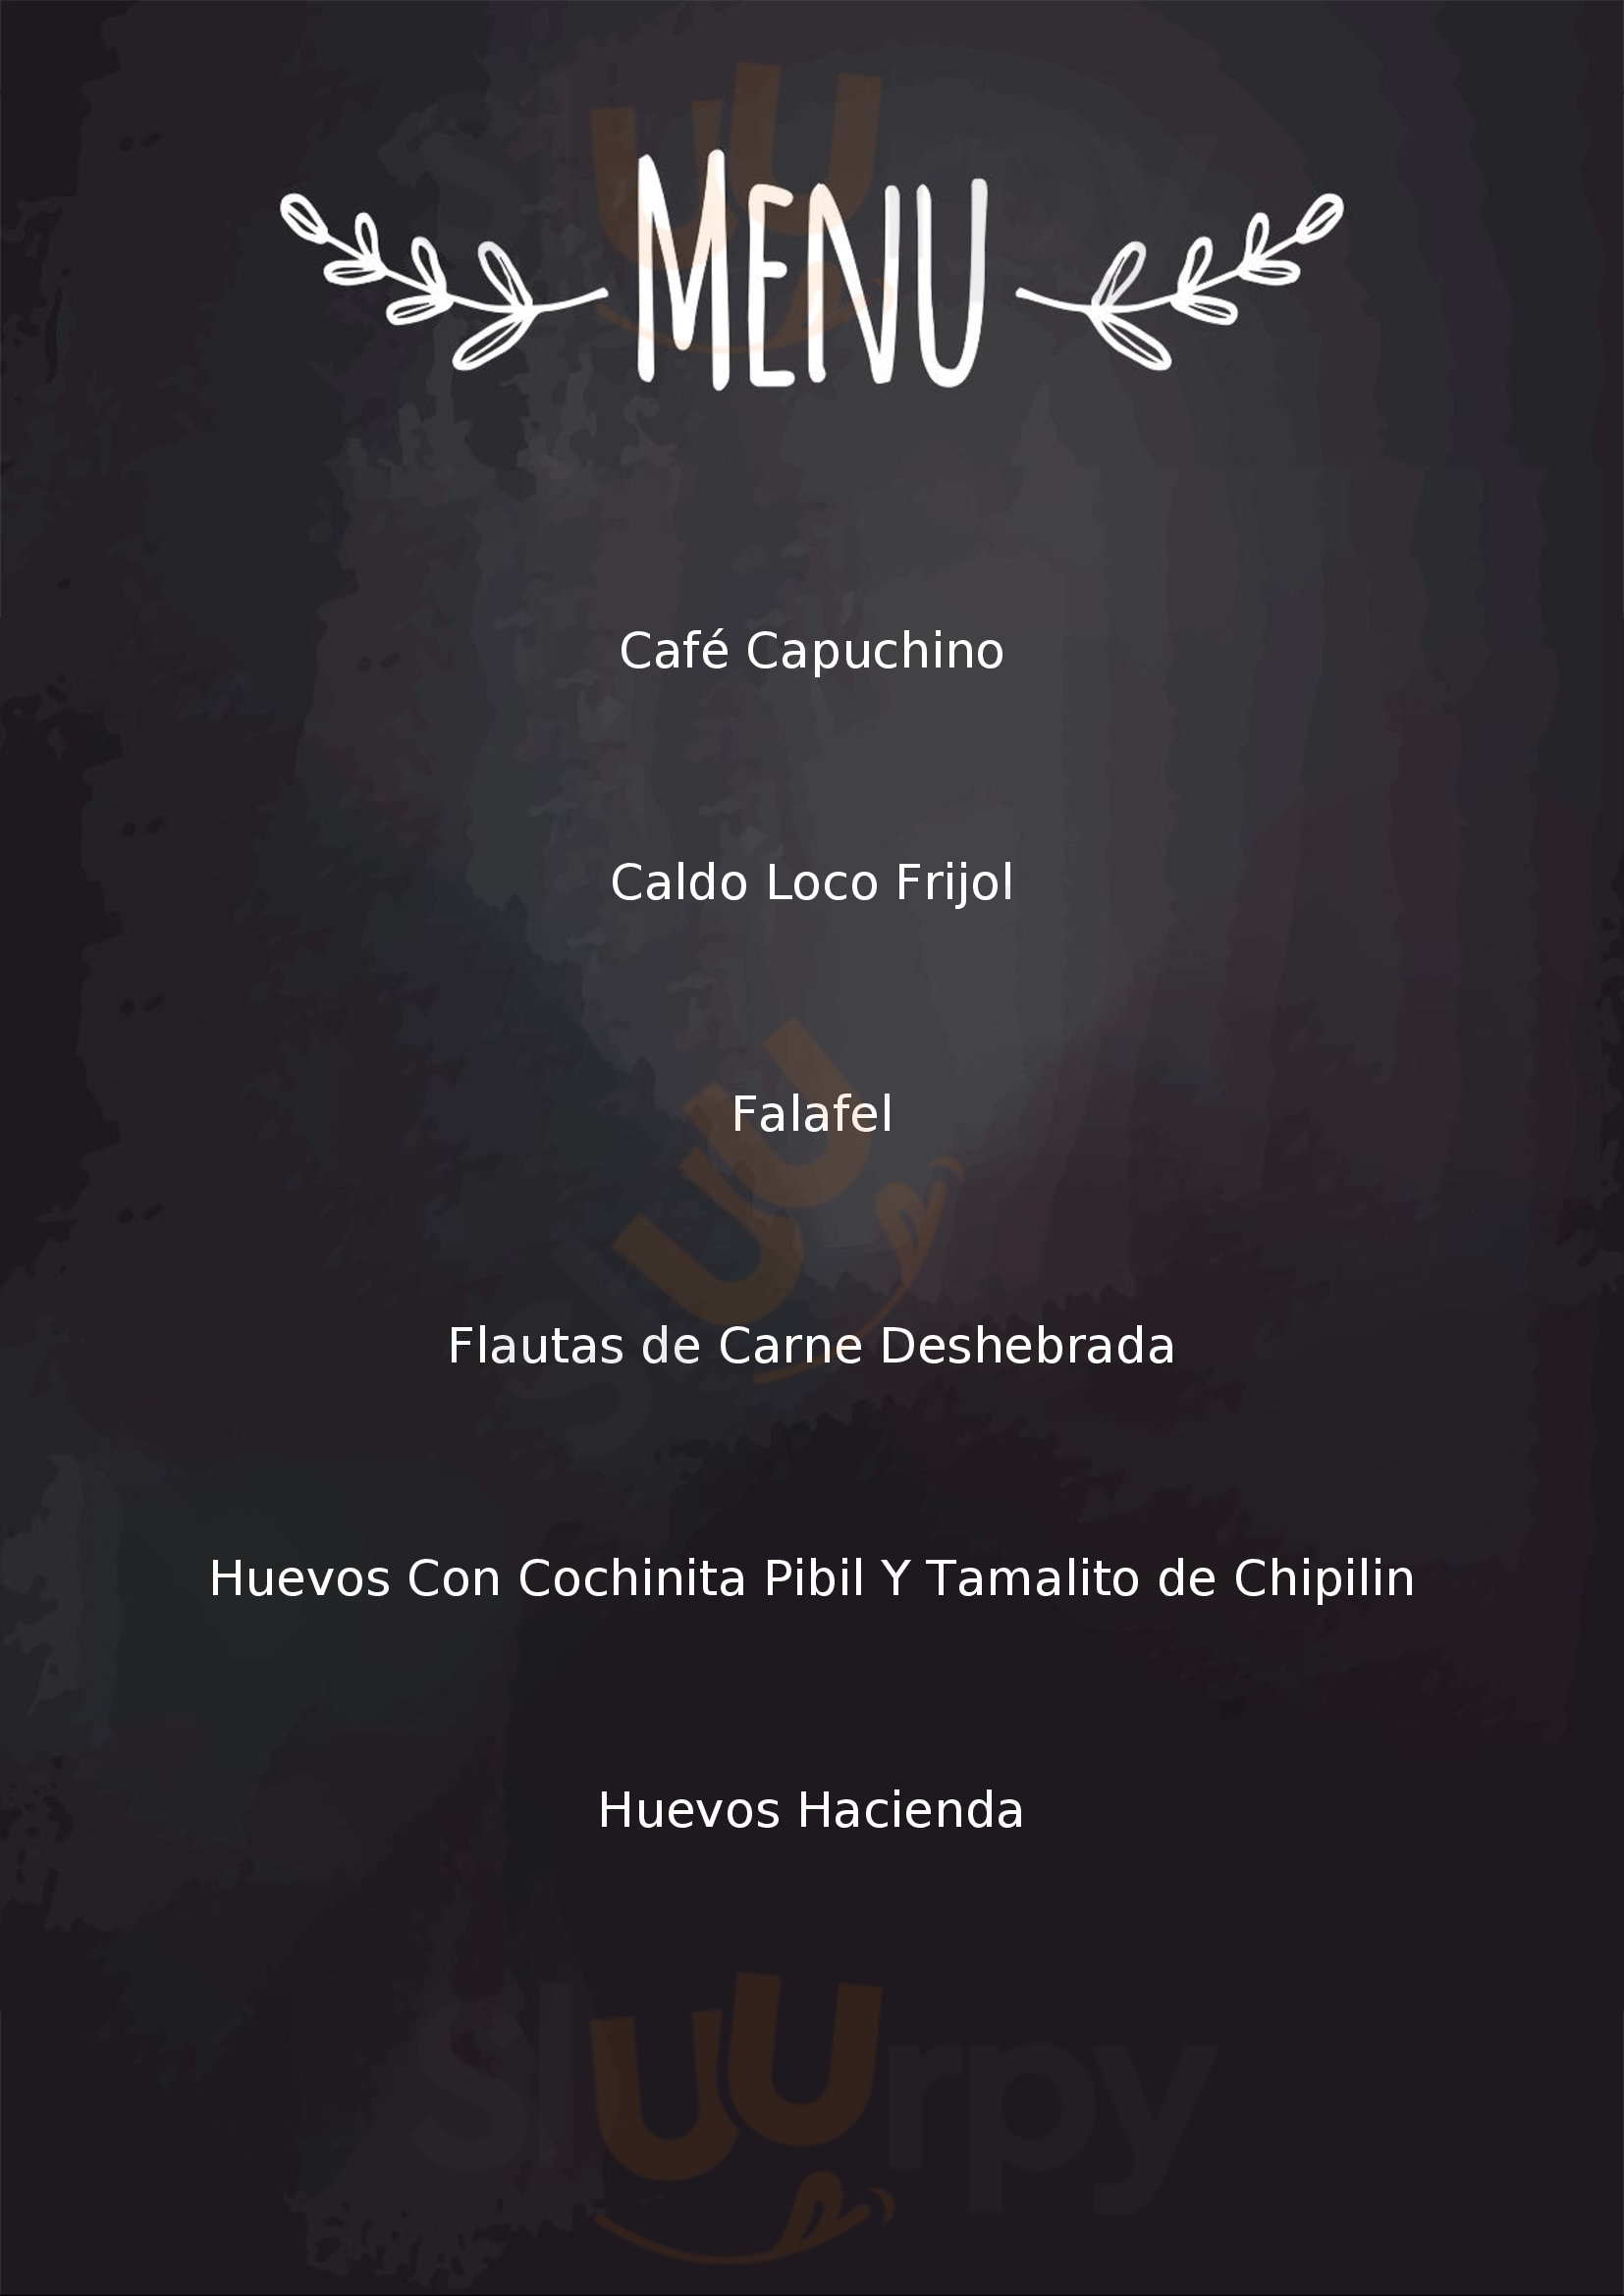 Le Cafe Ciudad de Guatemala Menu - 1